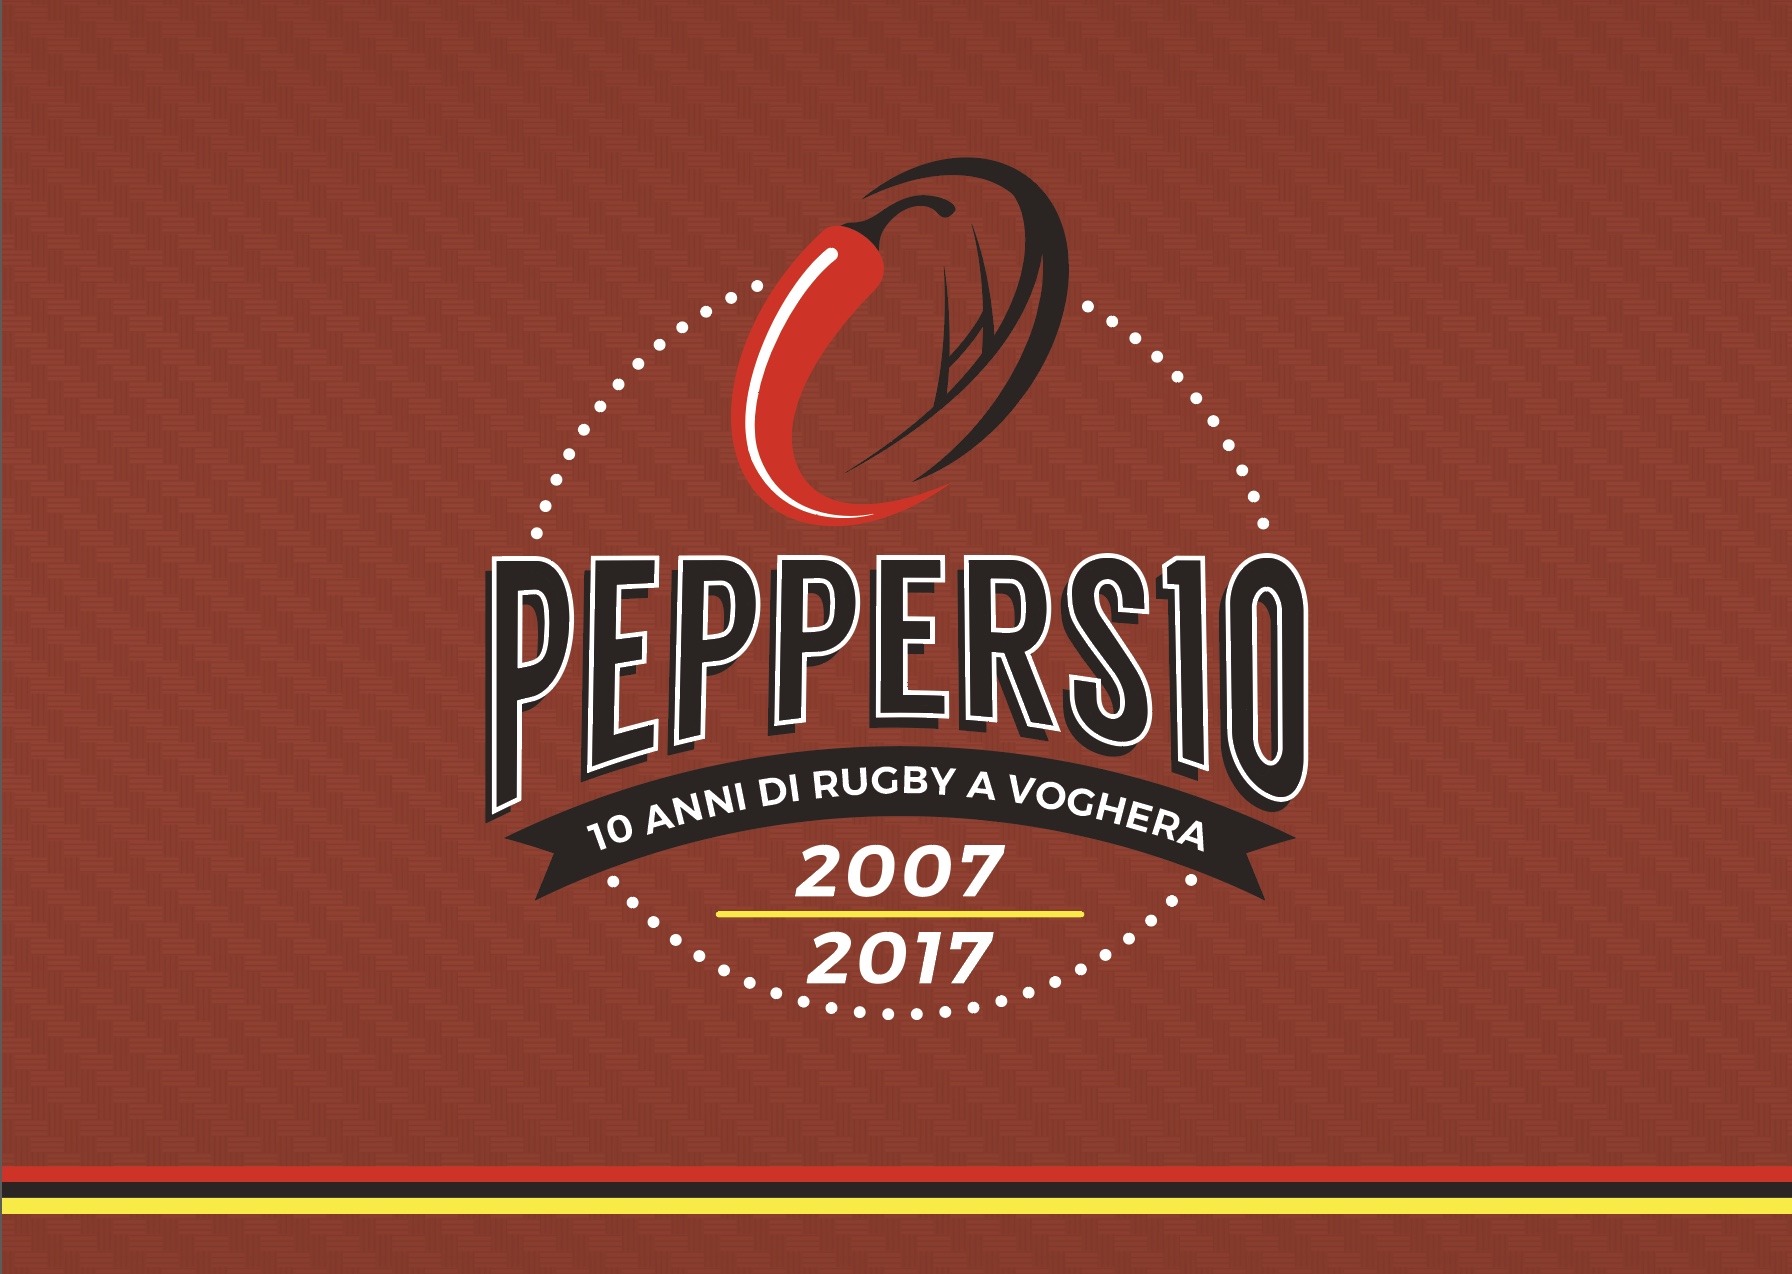 PEPPERS 10. 10 ANNI DI RUGBY A VOGHERA 2007-2017